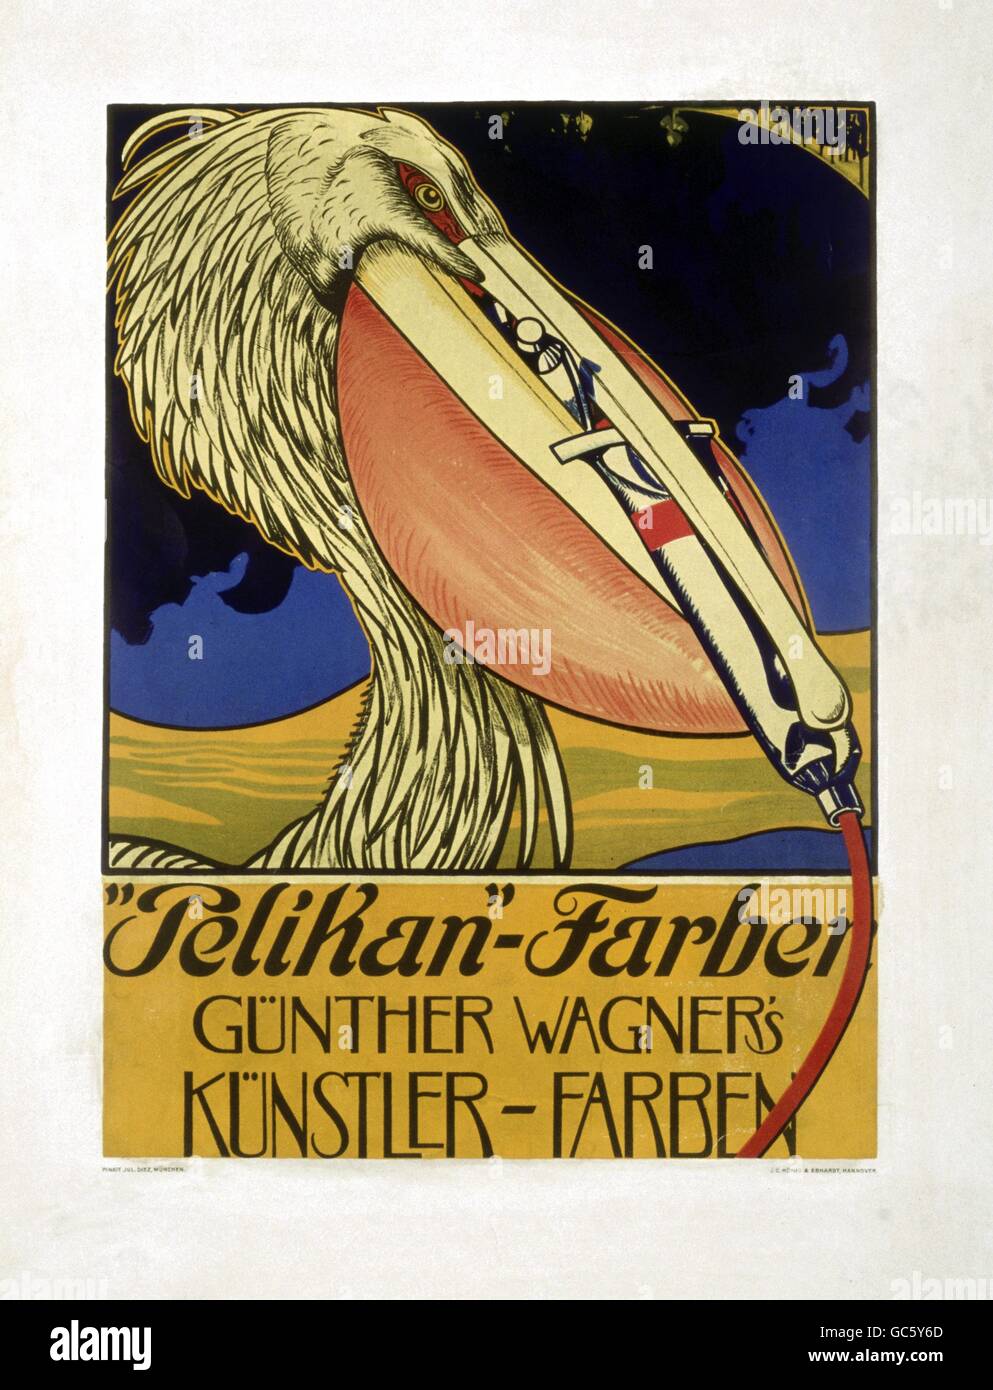 Publicité, ménage, papeterie, publicité pour Pelikan Colors, 1920, droits additionnels-Clearences-non disponible Banque D'Images